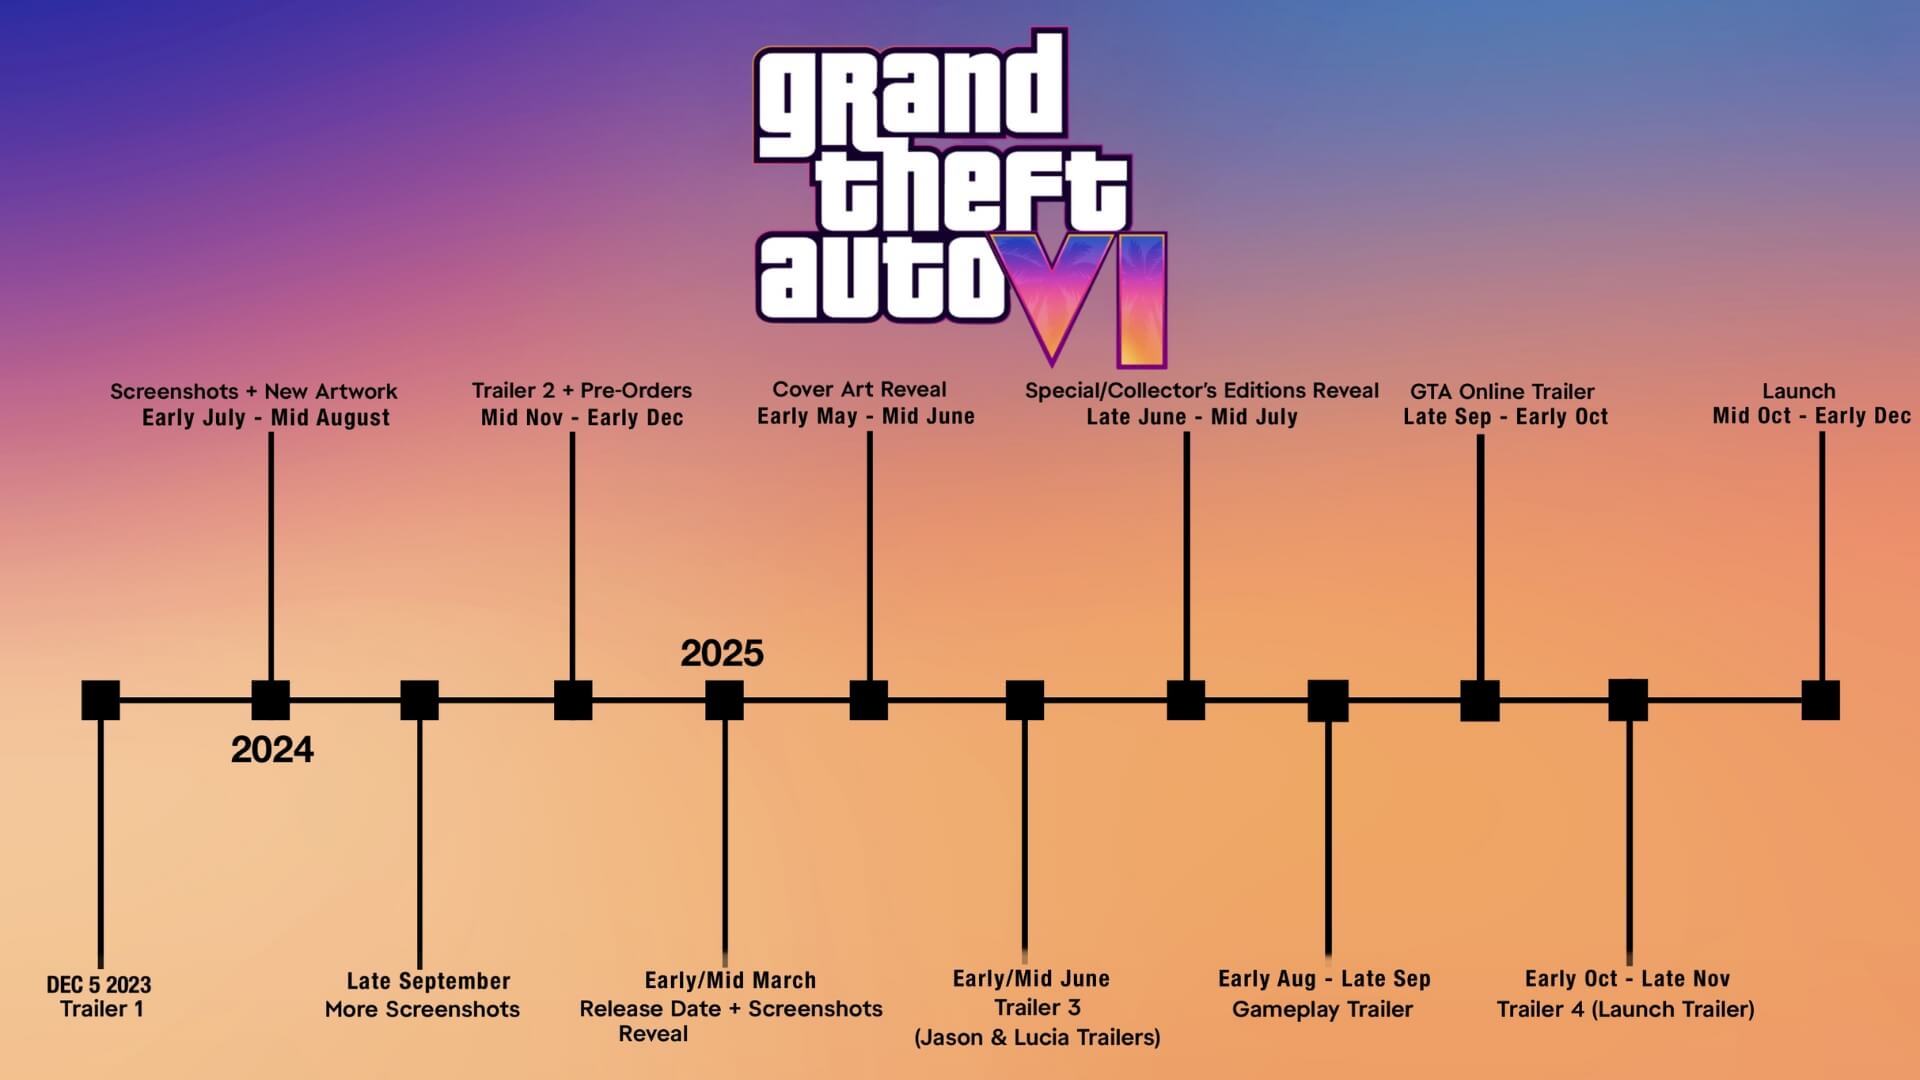 Grand Theft Auto VI Marketing Campaign